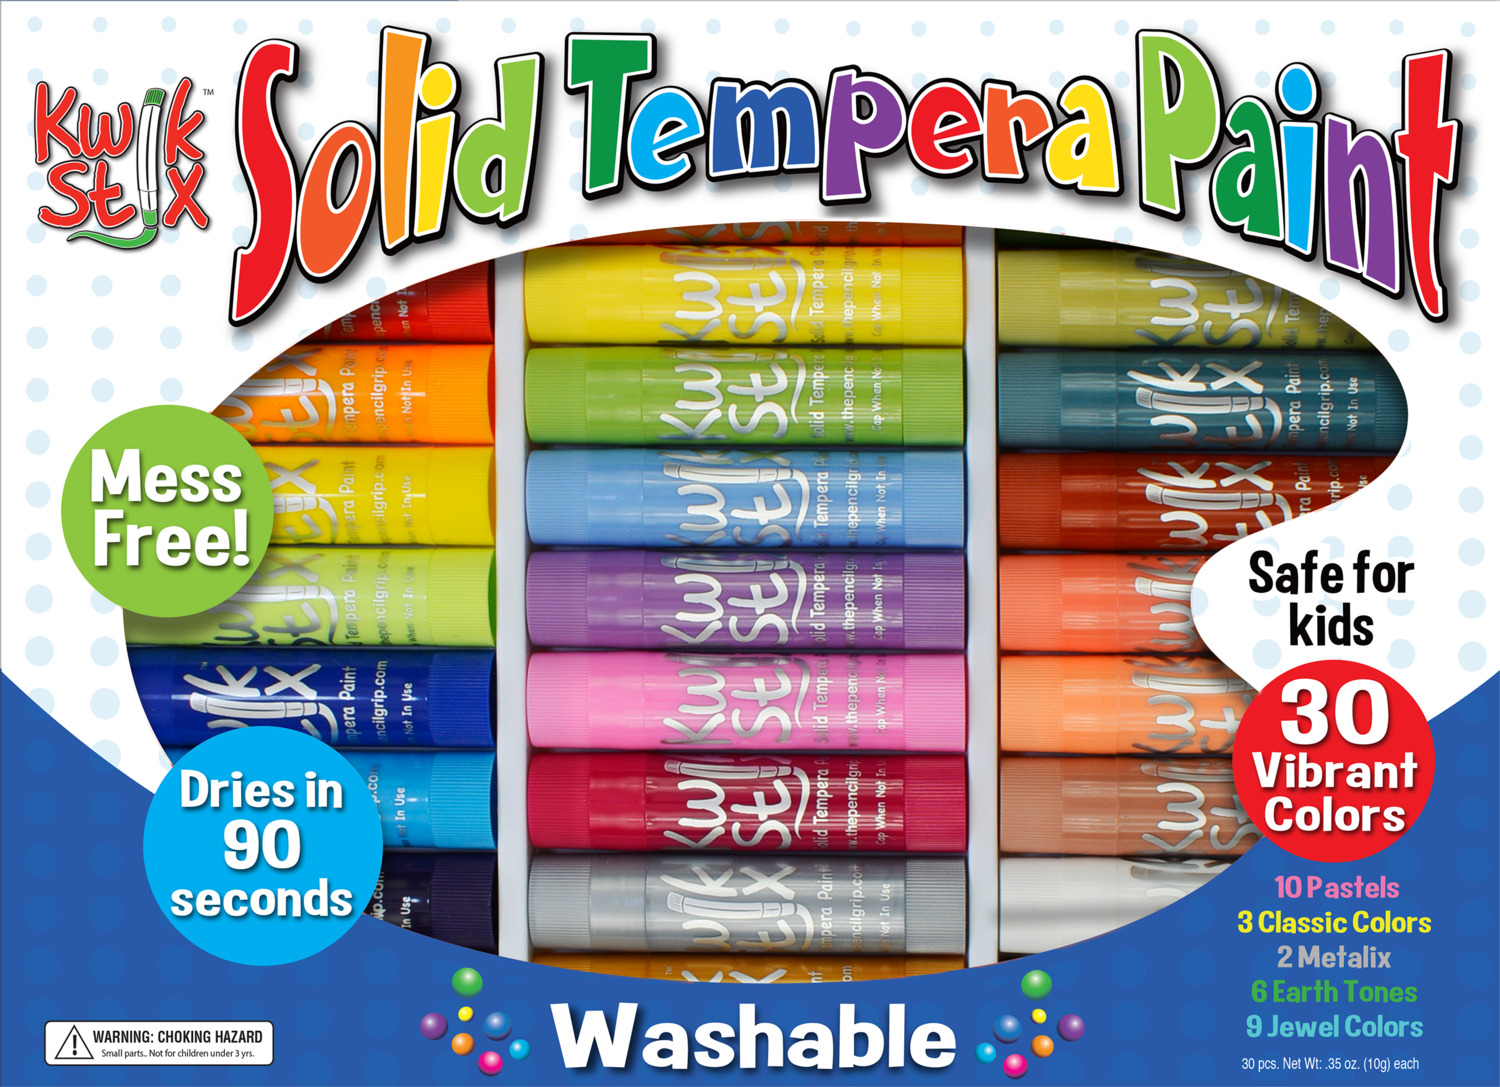 The Pencil Grip Kwik Stix 12-Color Solid Tempera Paint